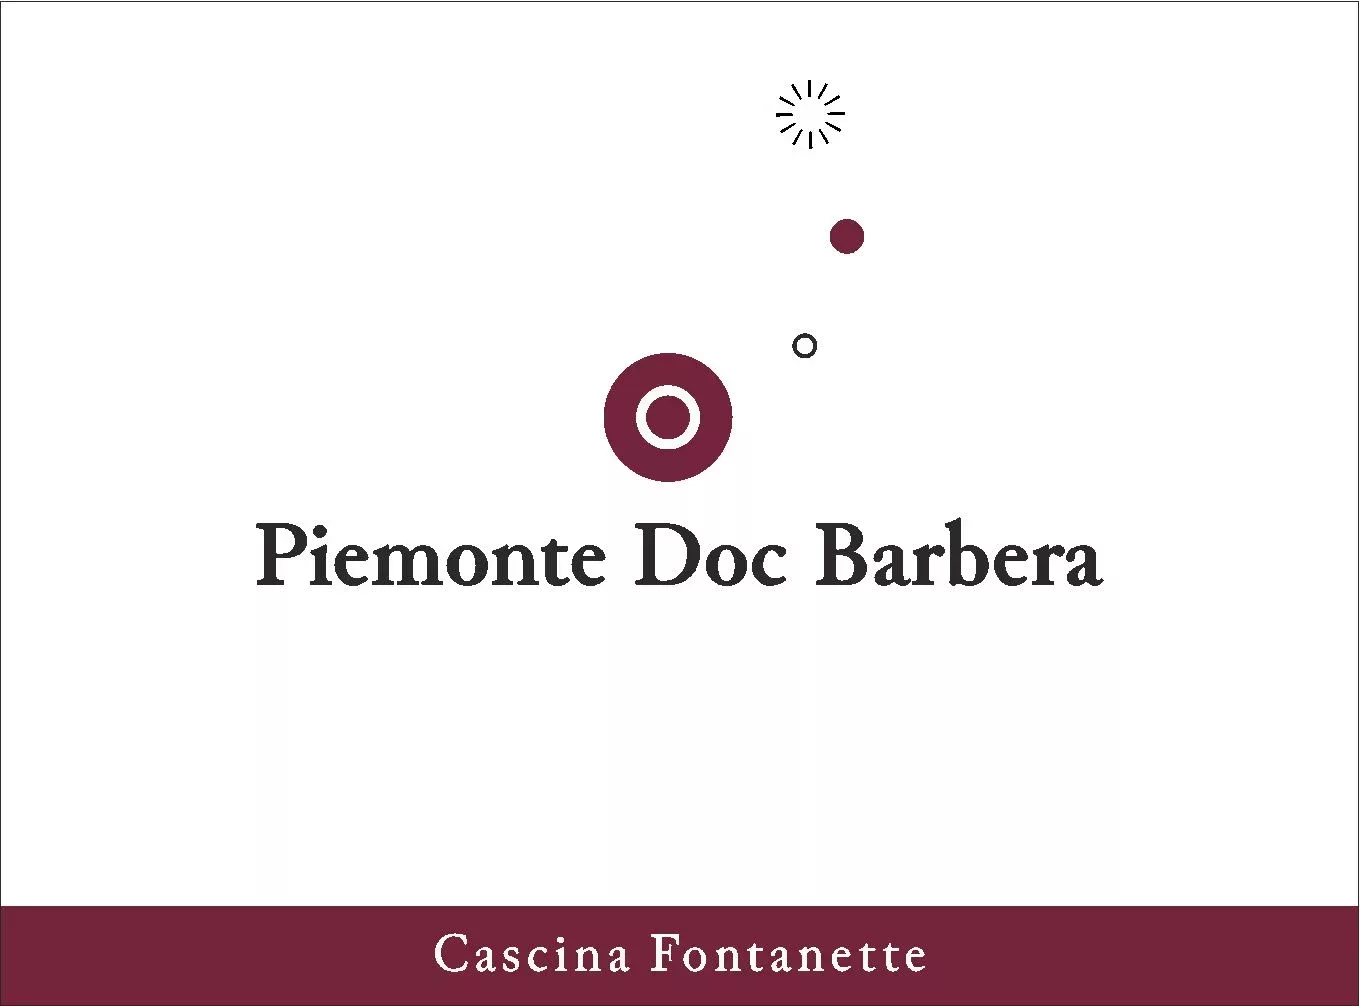 Piemonte Barbera DOC - Cascina Fontanette (label)